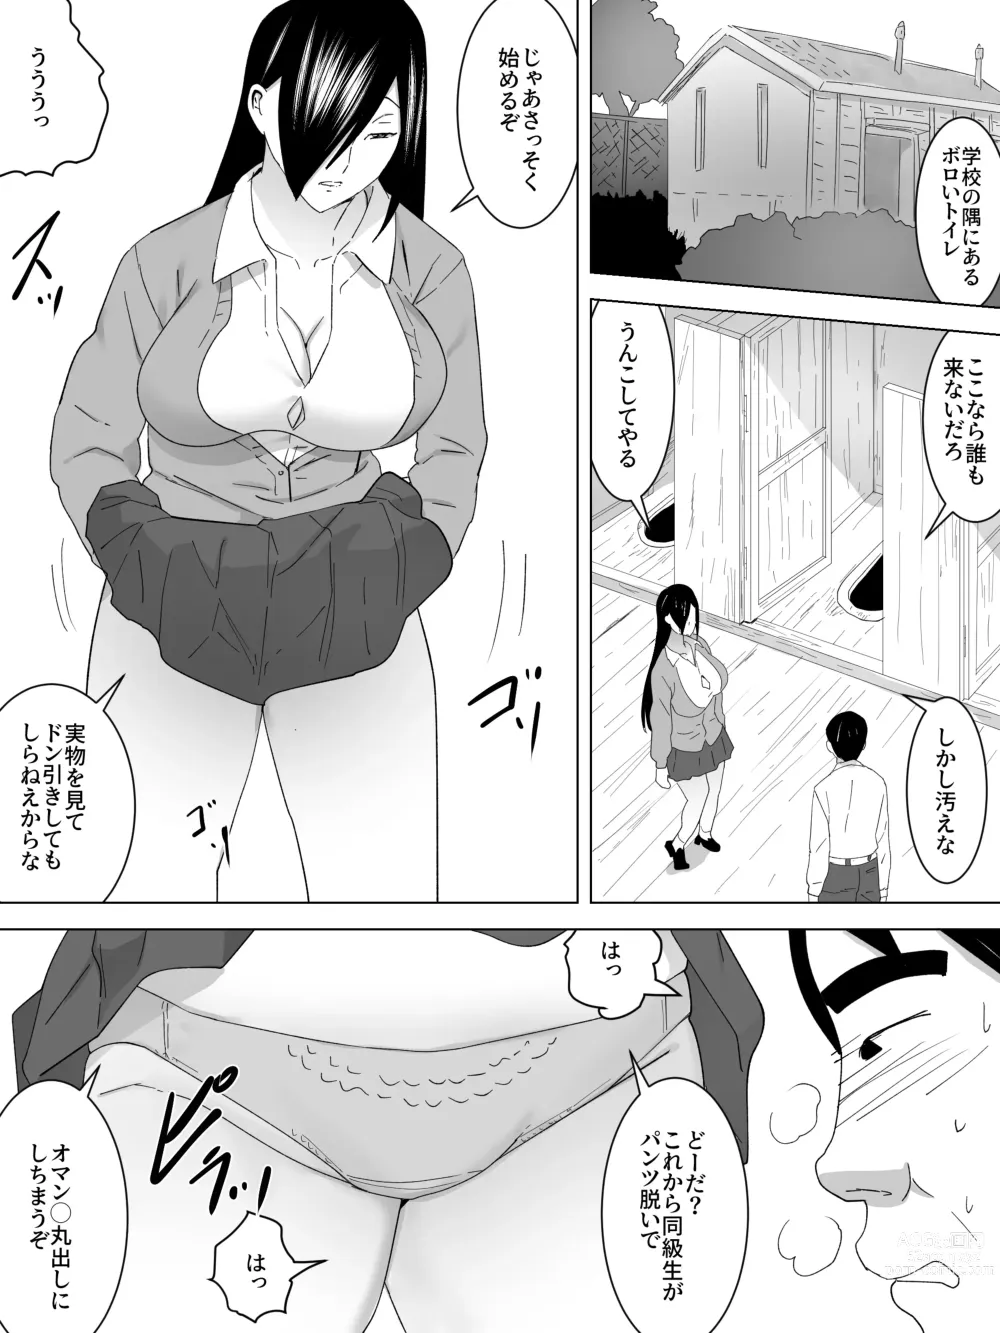 Page 5 of doujinshi Joshi Benjo no Shukudai